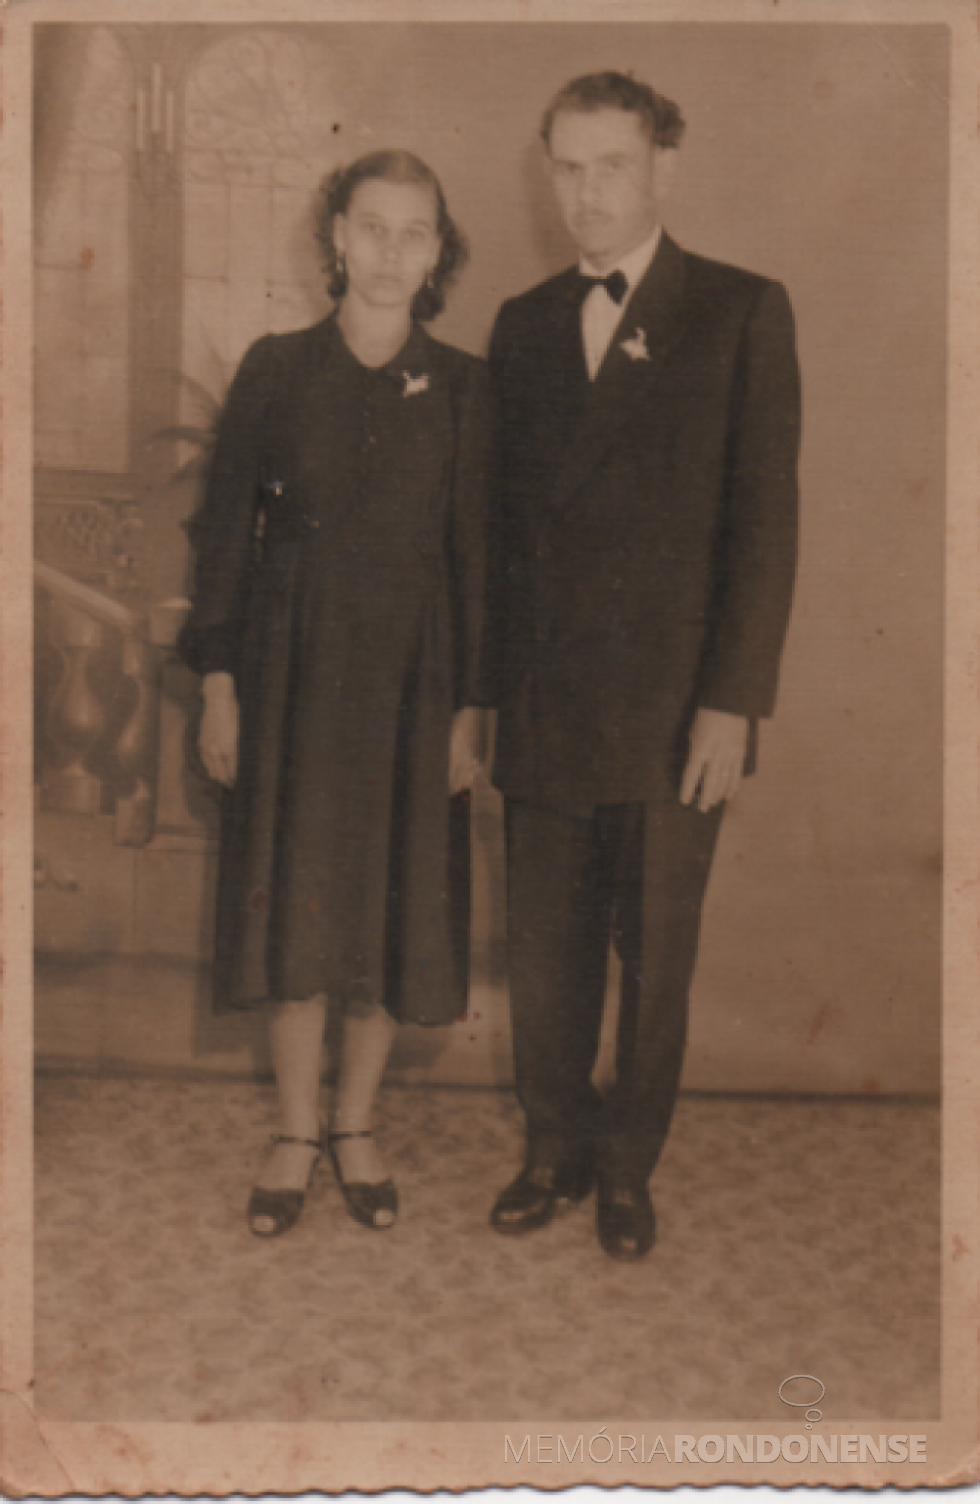 || Noivos Nelda Weber e Harry Heimedinger que se casaram em maio de 1954. 
A noiva está de vestido azul e sem véu, por ter engravidado antes do casamento, ela não pode usar um vestido branco e nem véu grinalda. 
Era a regra na época. 
Imagem: Acervo pessoal - FOTO 2 -